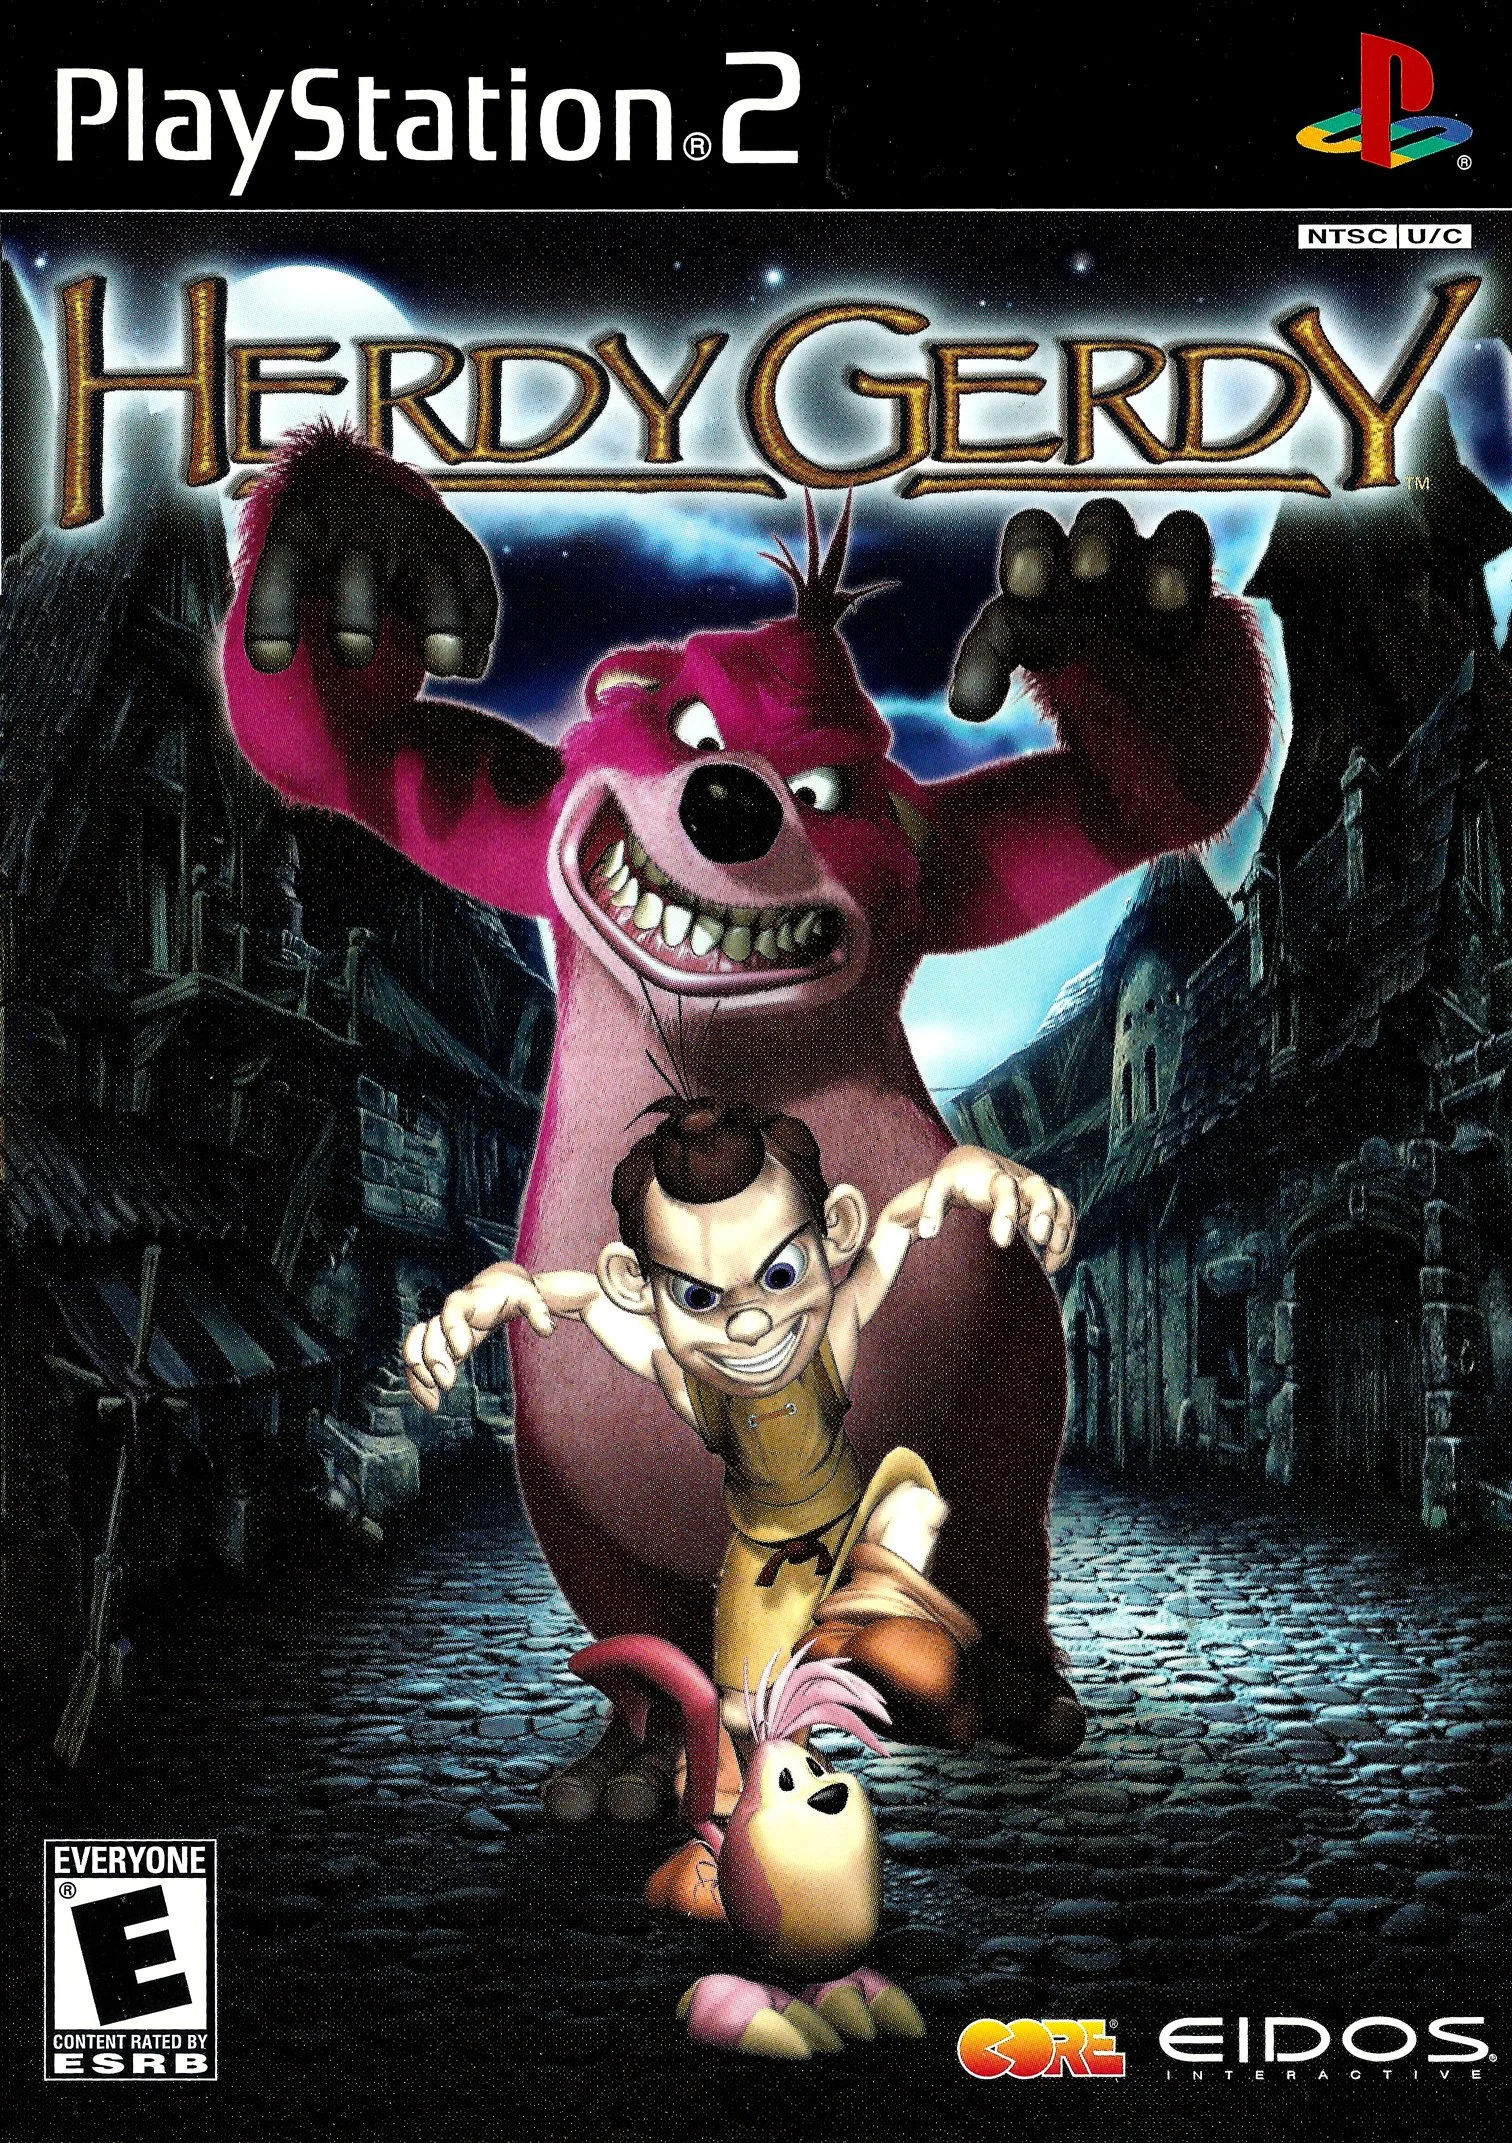 Herdy Gerdy